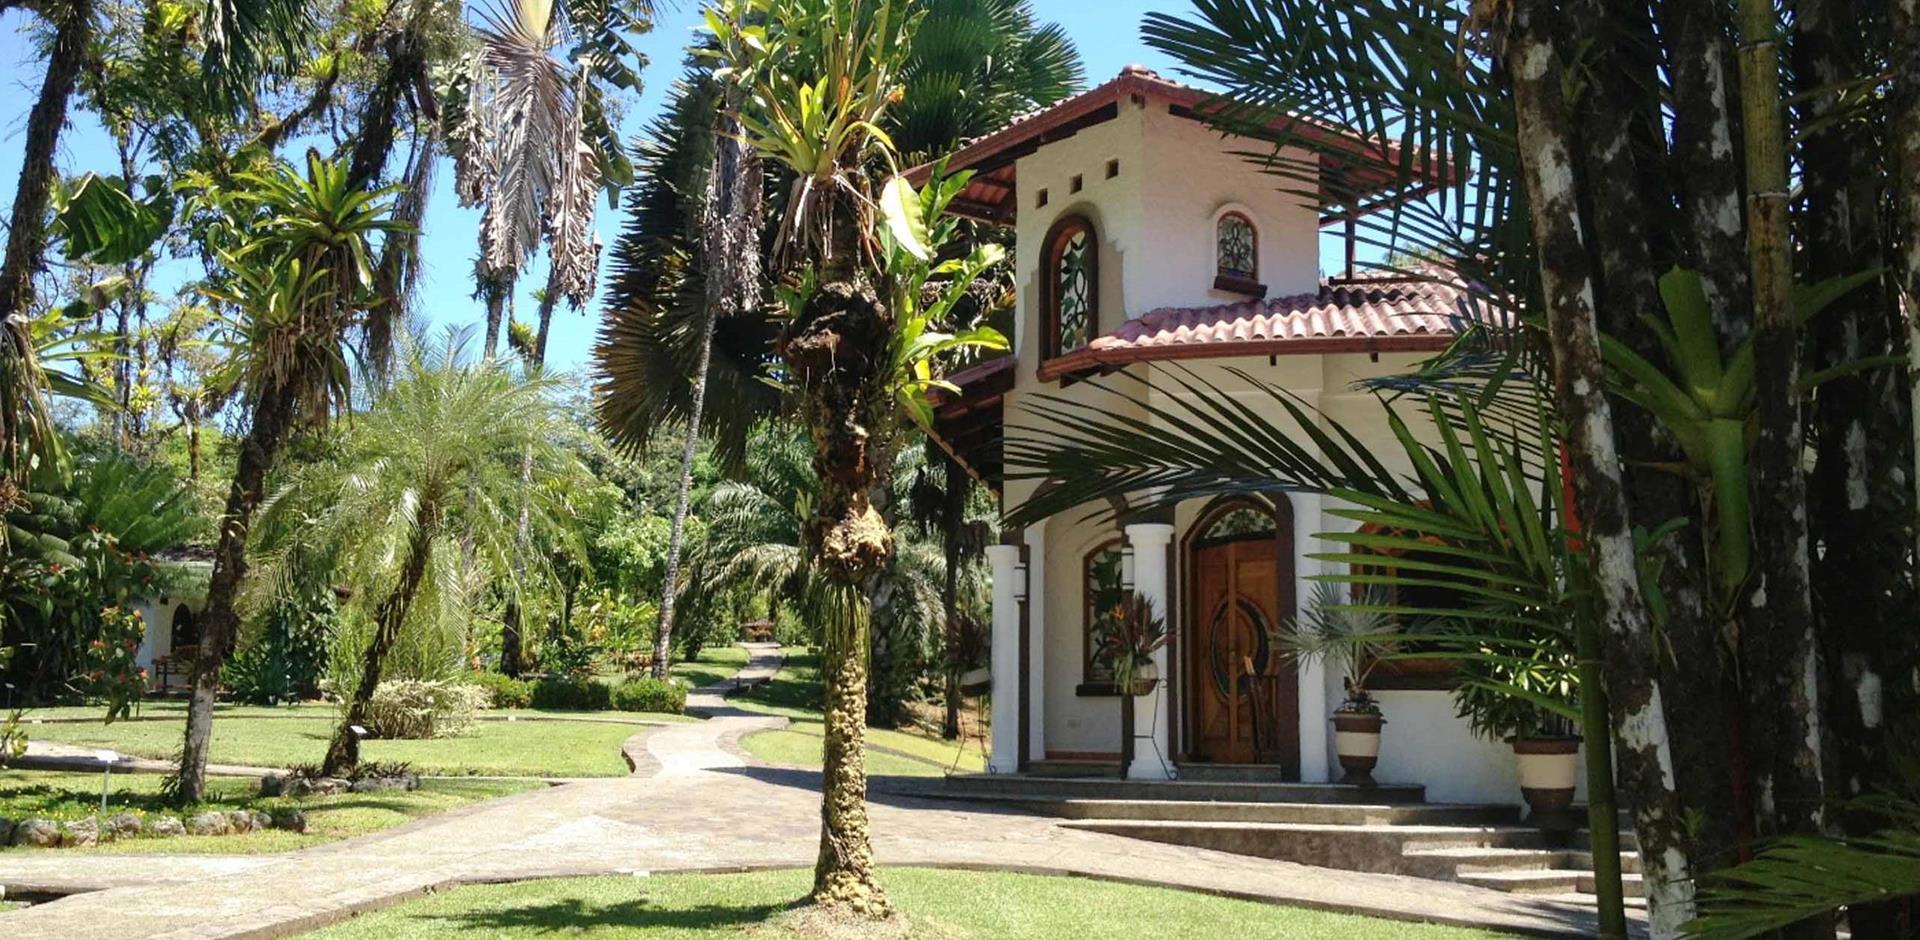 Casa Corcovado Jungle Lodge, Costa Rica, A&K